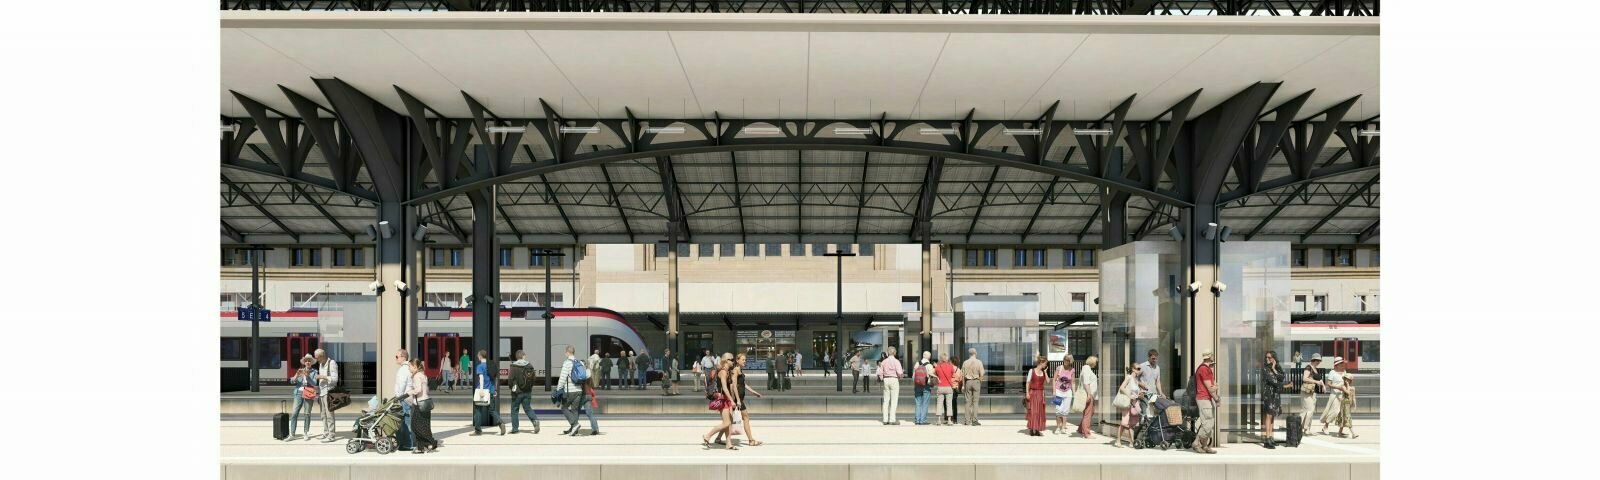 La gare de Lausanne sera modernisée et transformée.